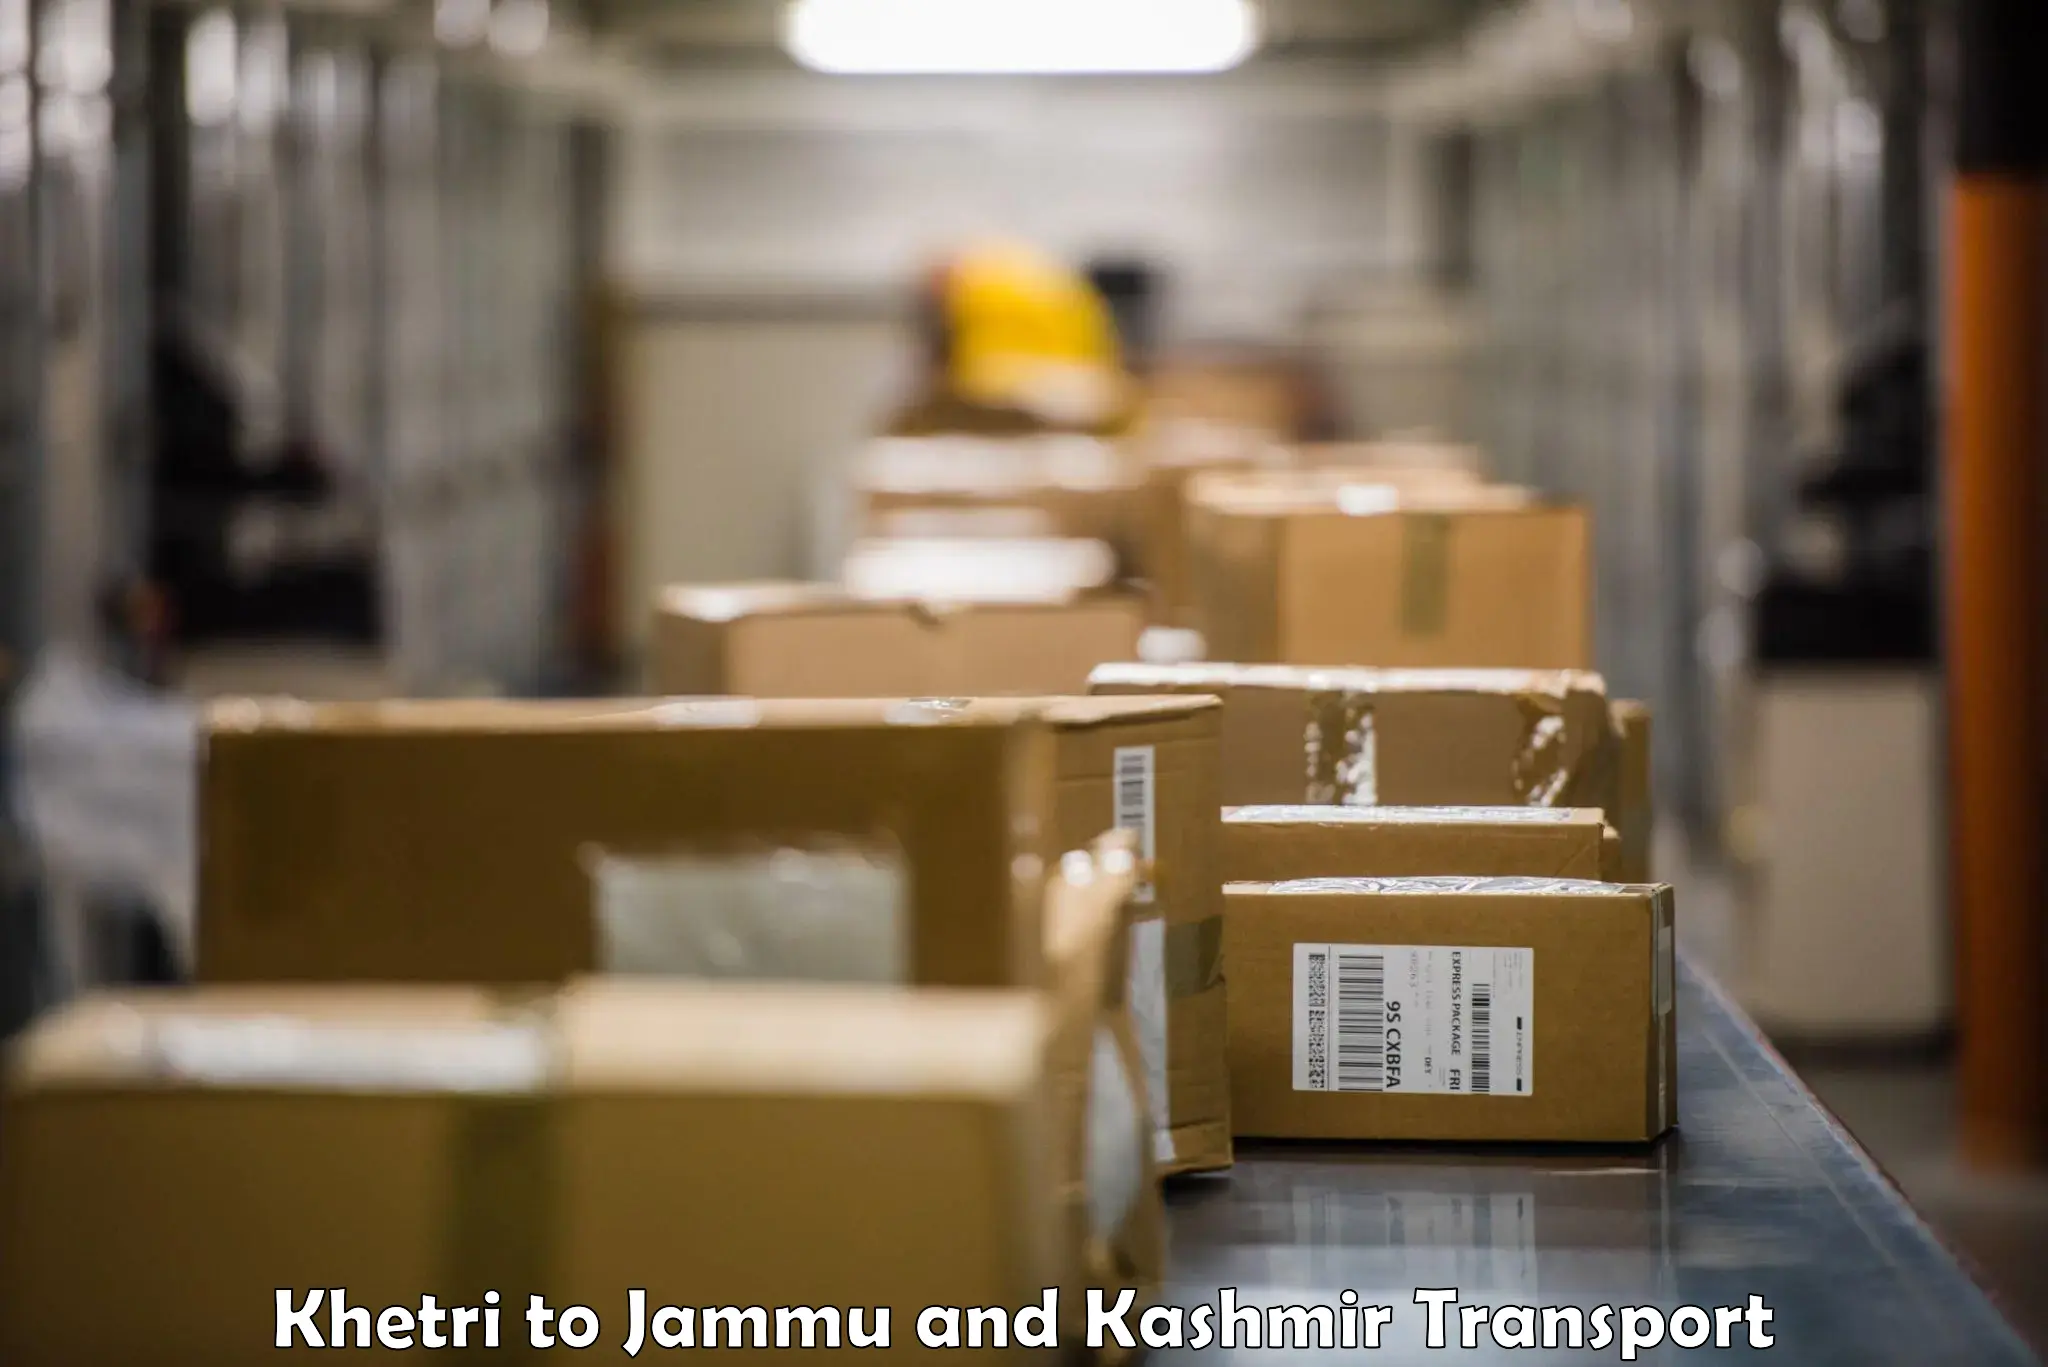 Daily parcel service transport Khetri to University of Jammu